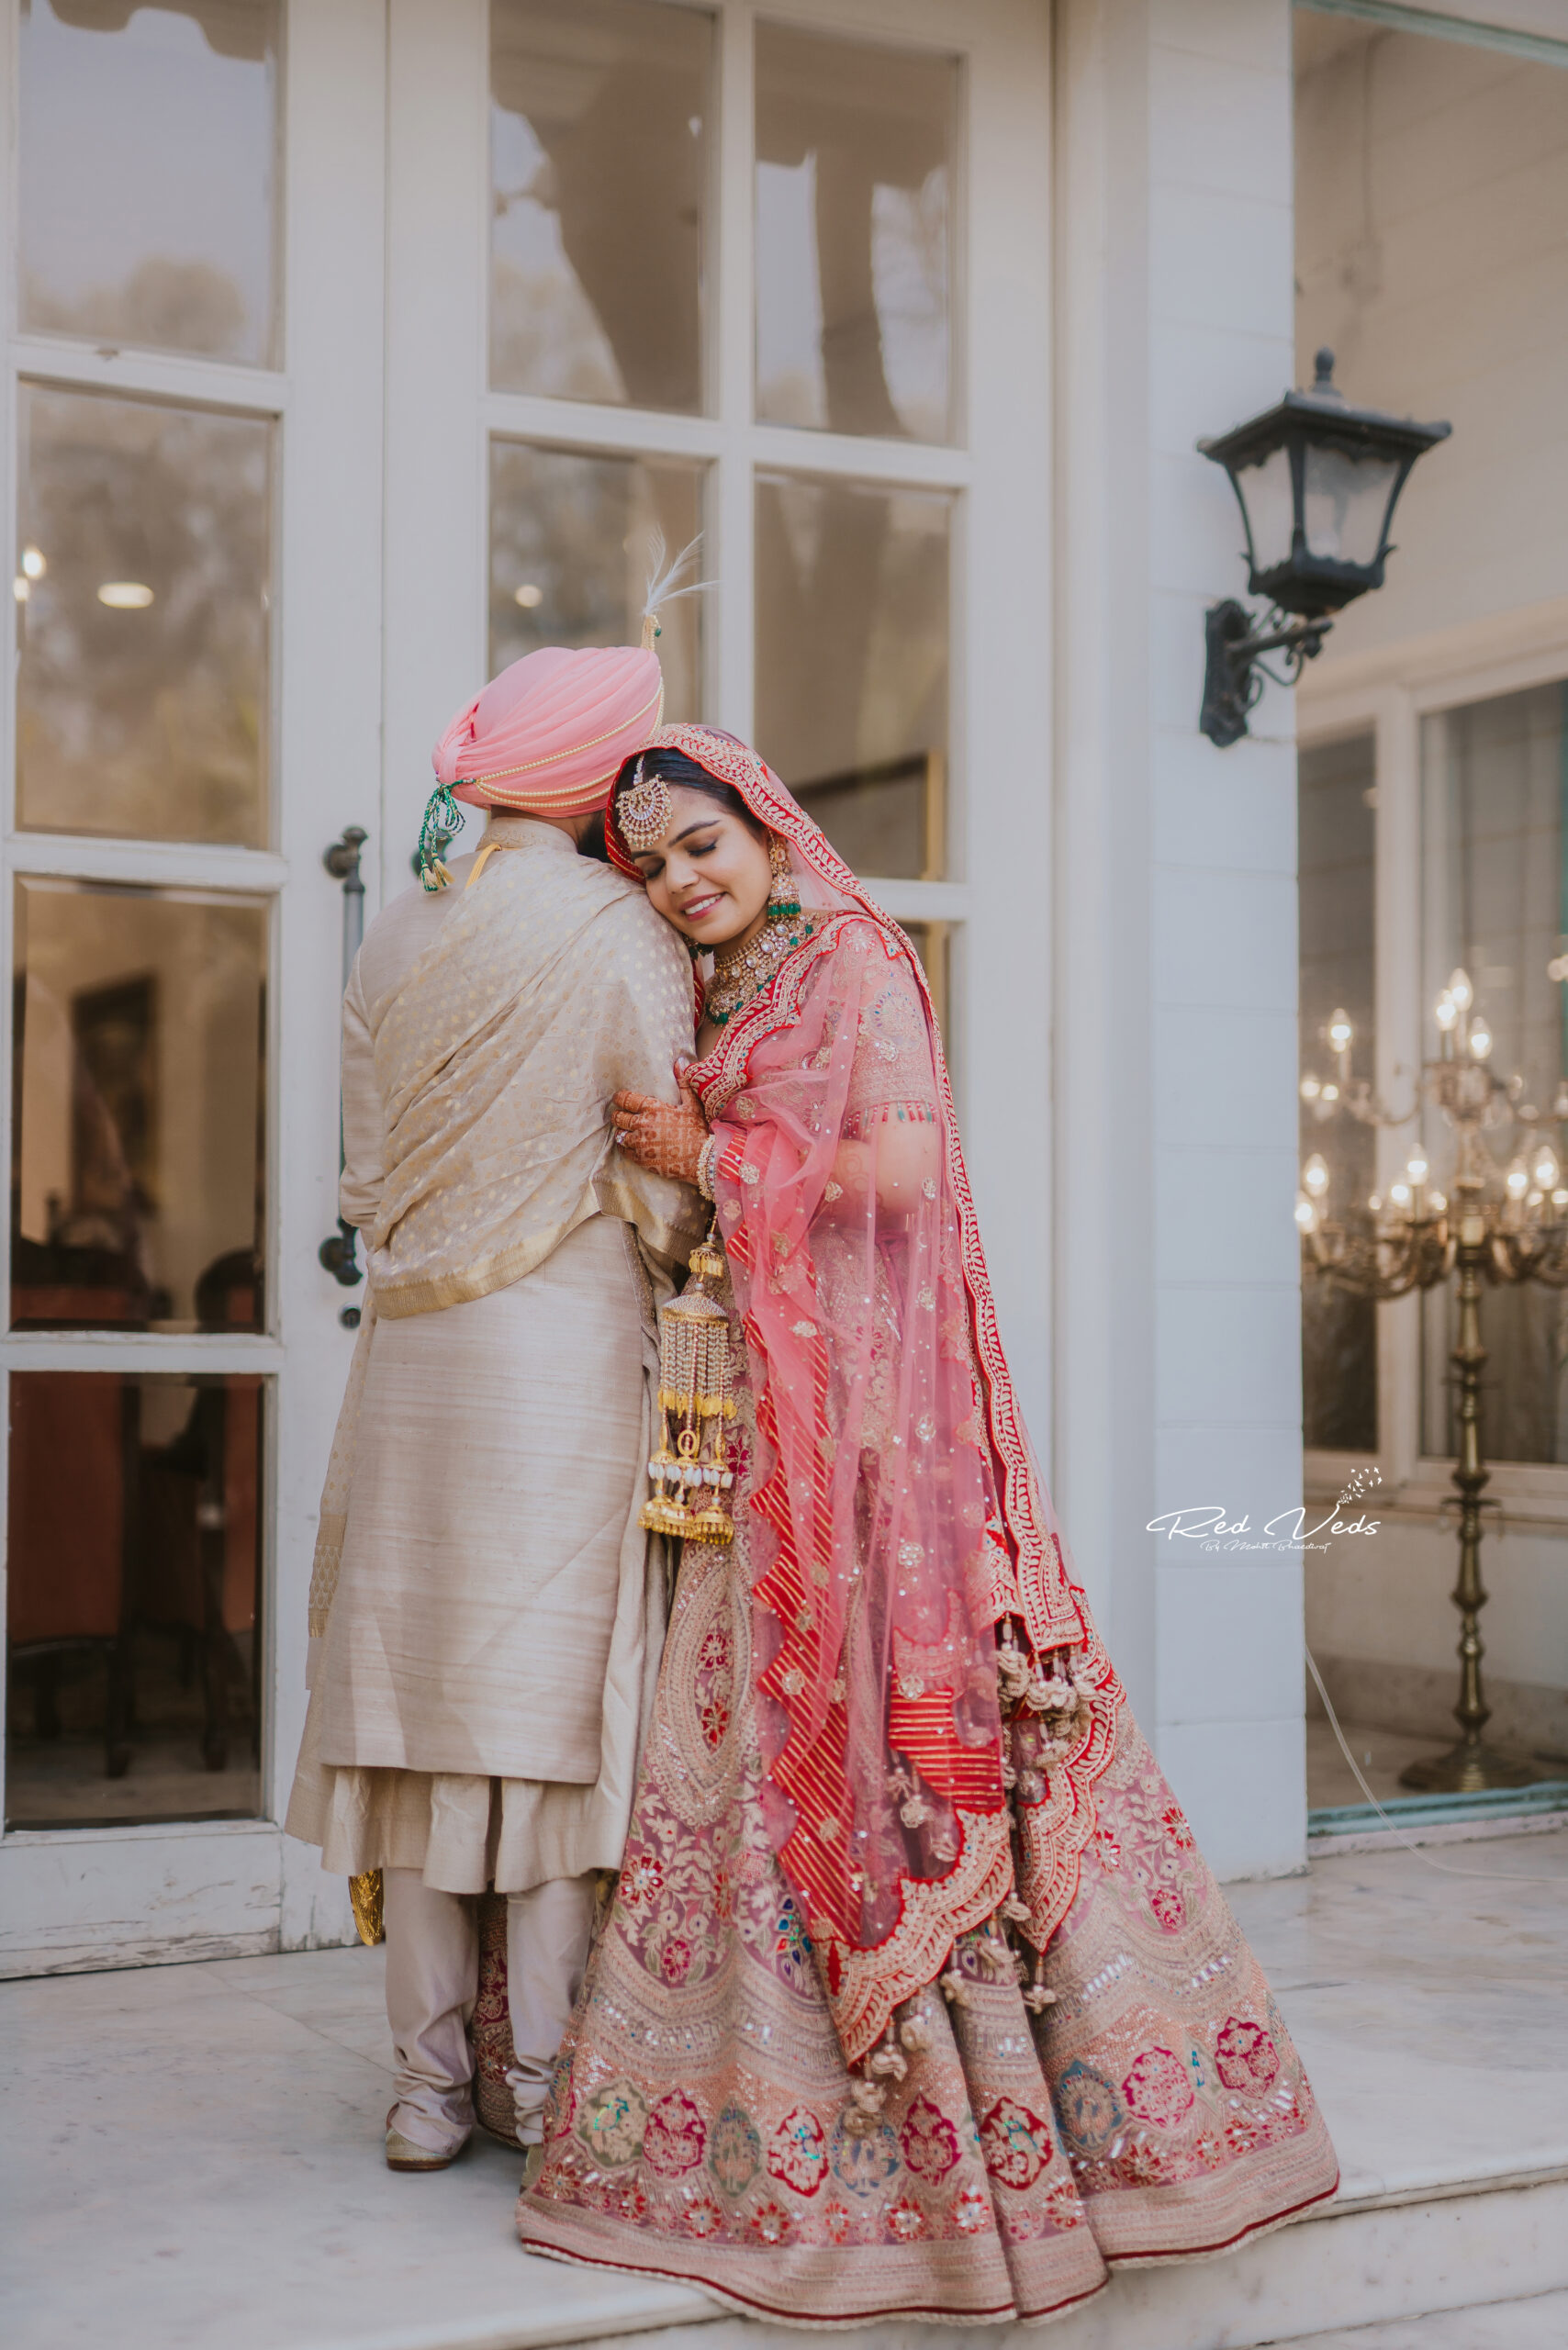 Ugh gr8 | Indian bride poses, Indian bride photography poses, Indian  wedding photography poses